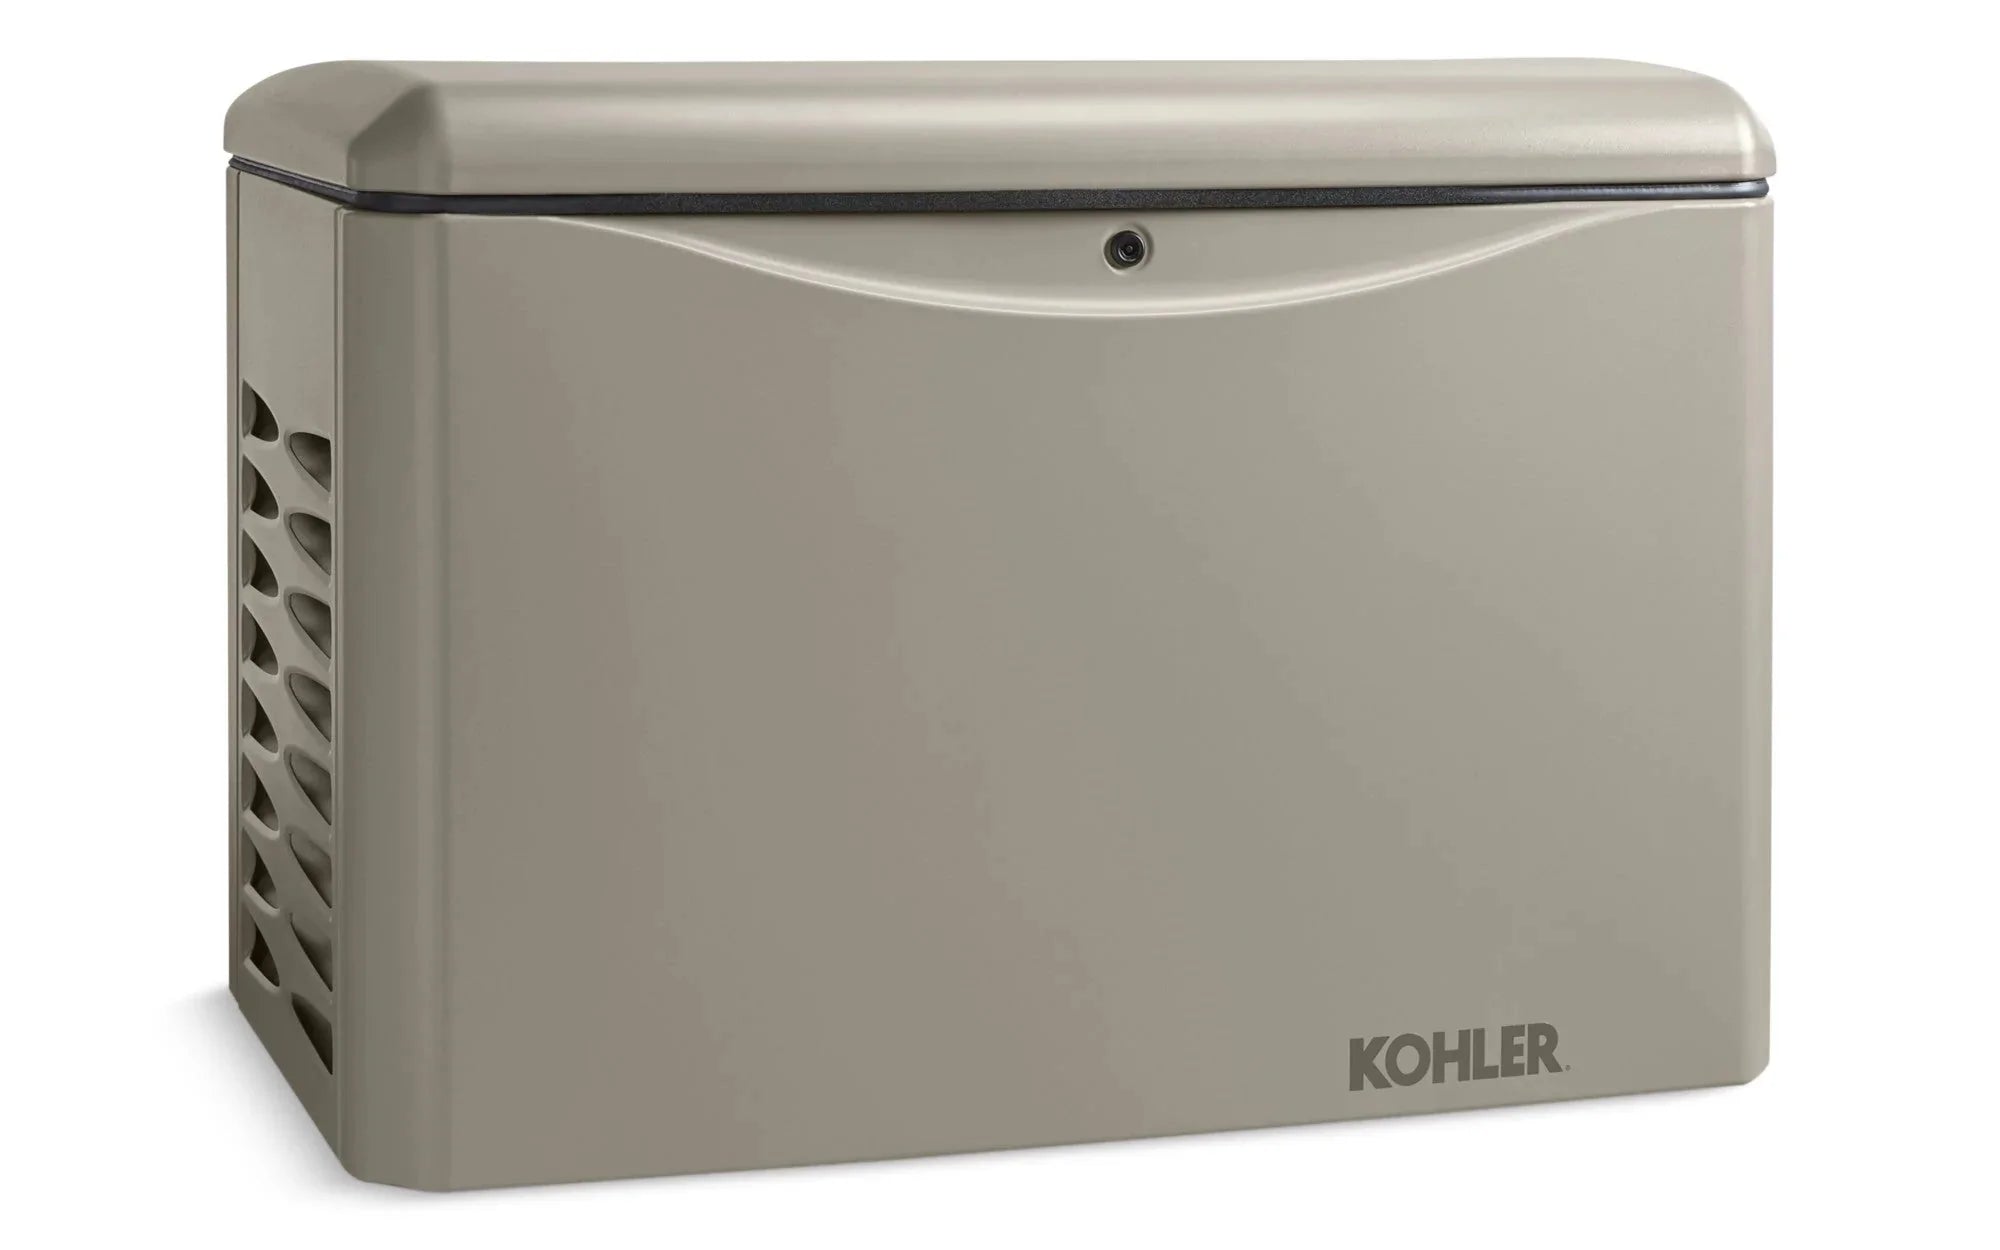 Kohler, Kohler 14RCA-QS8 14KW 120/240 3-Phase Standby Generator with OnCue Plus New